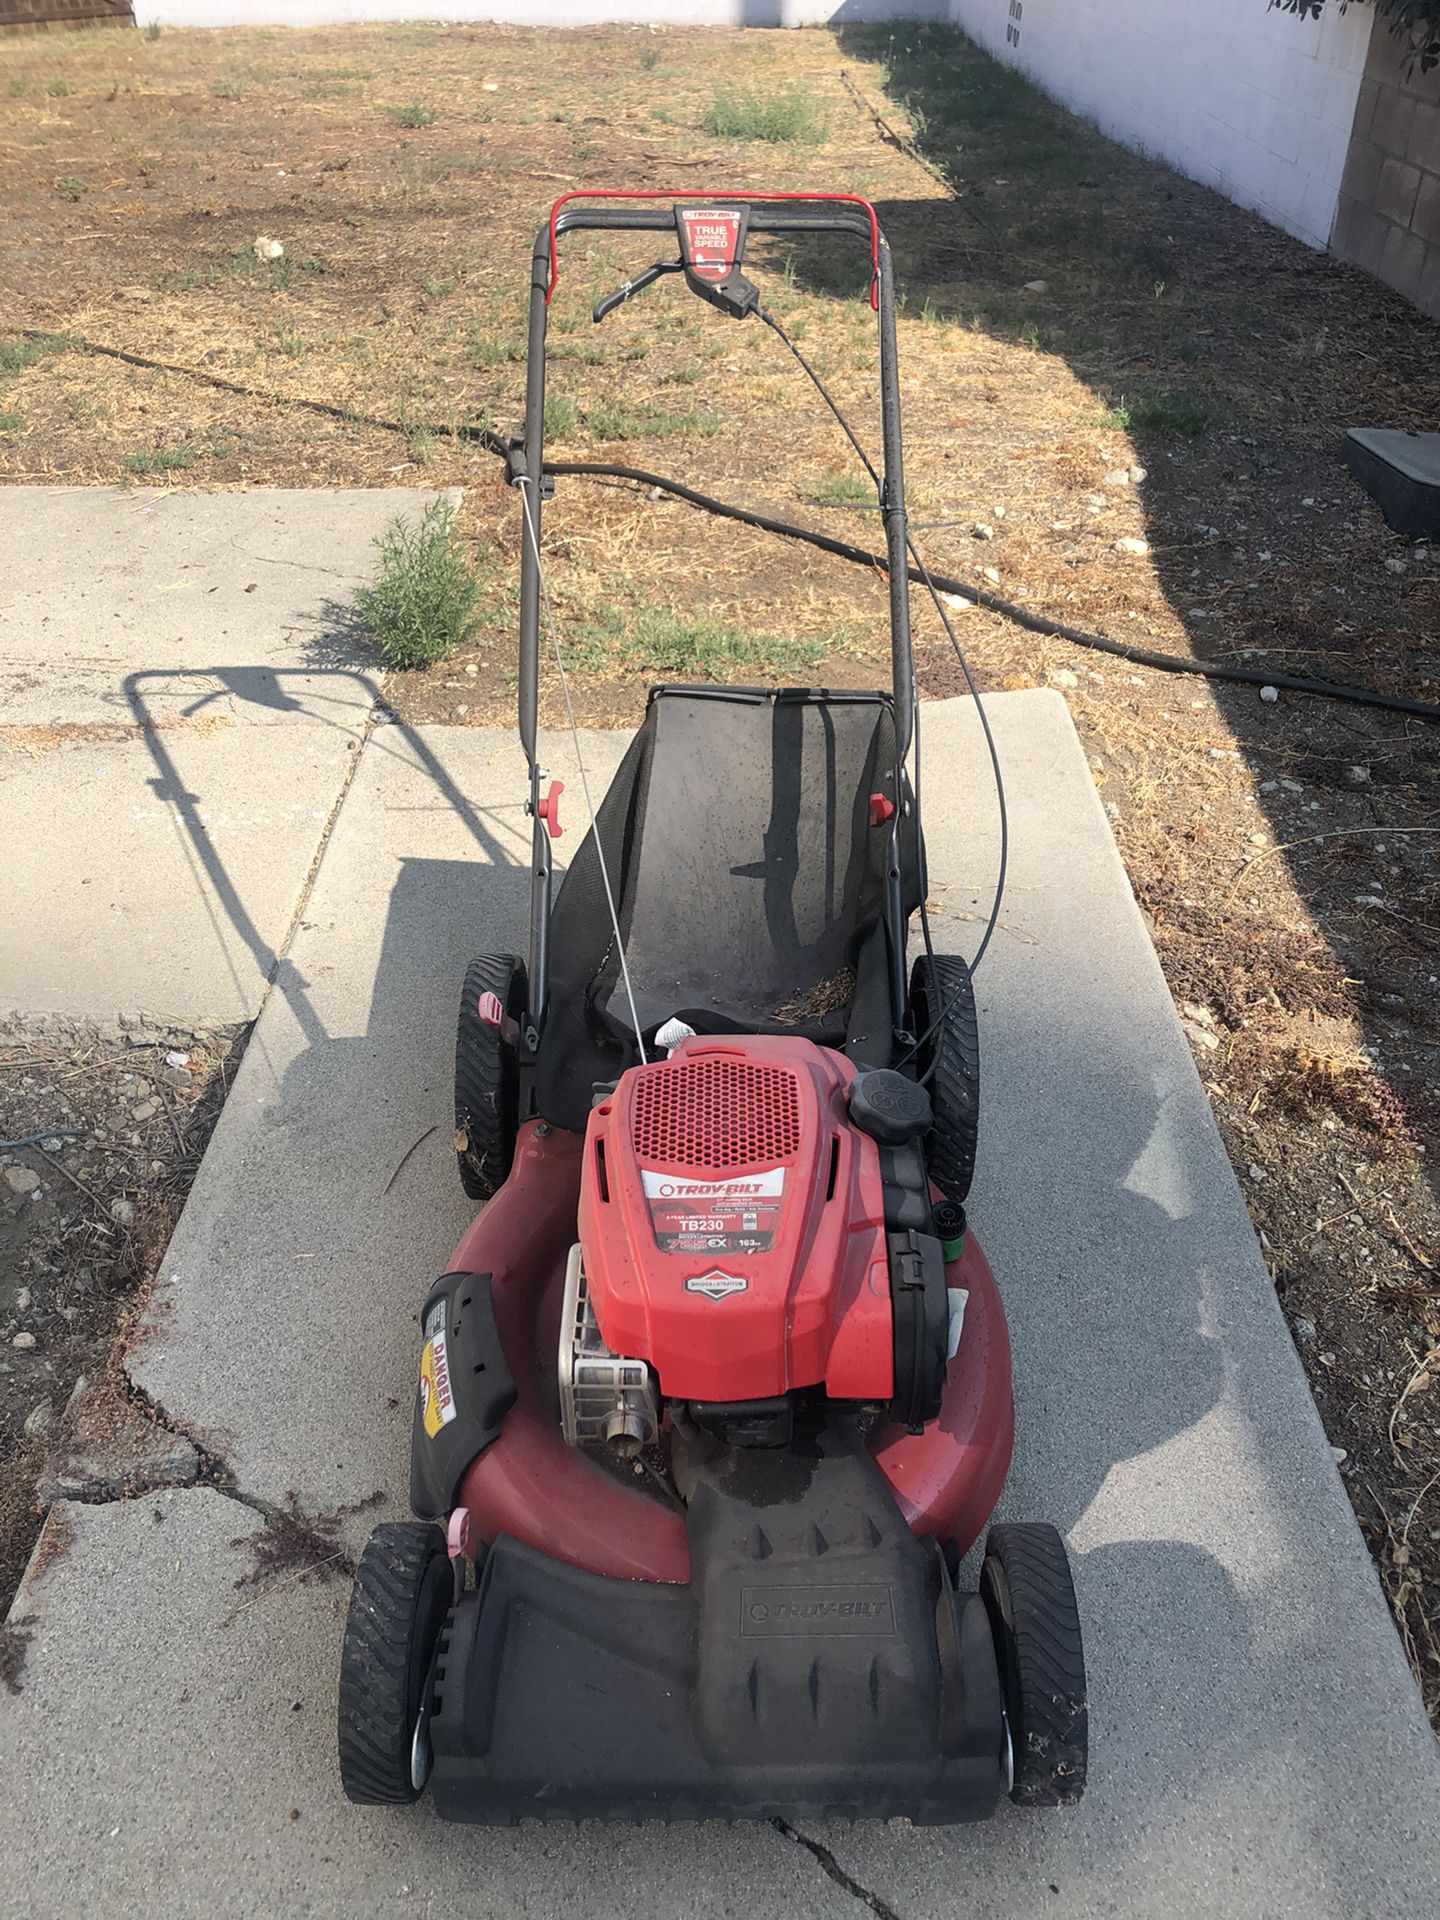 Troy Bilt Self-Propelled Lawn Mower